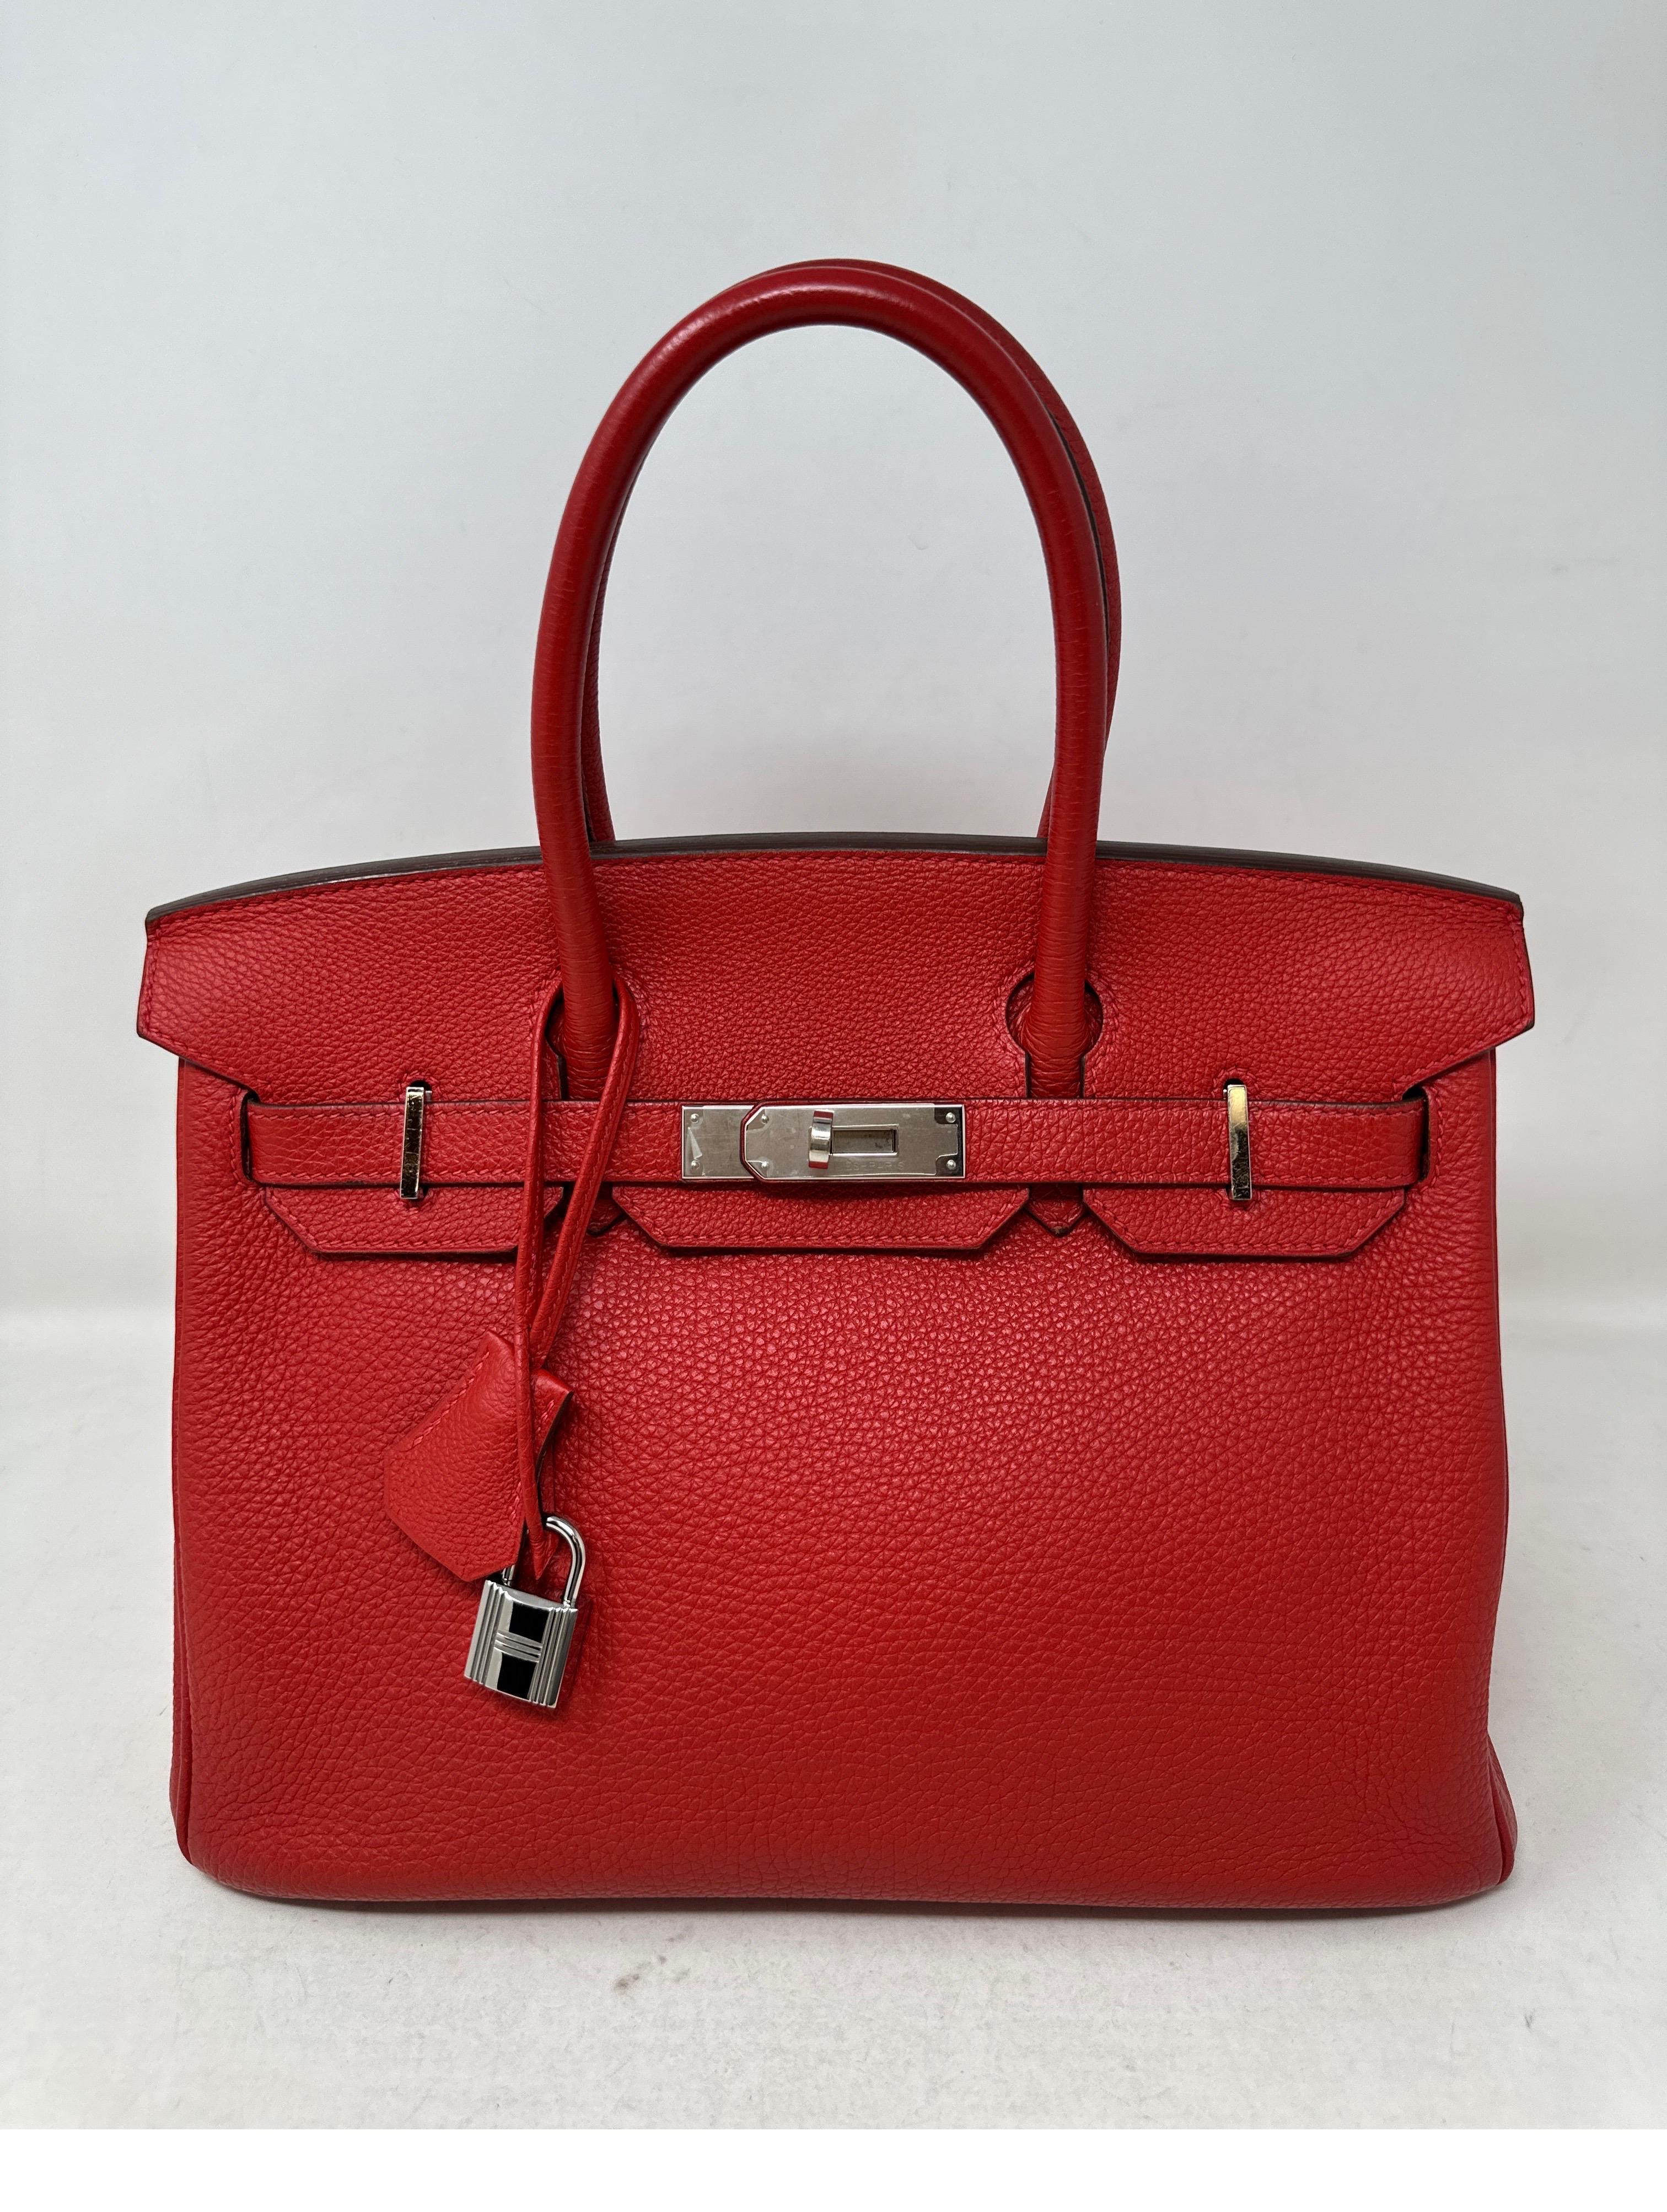 Hermès - Sac Birkin 30 Rouge Garance  8